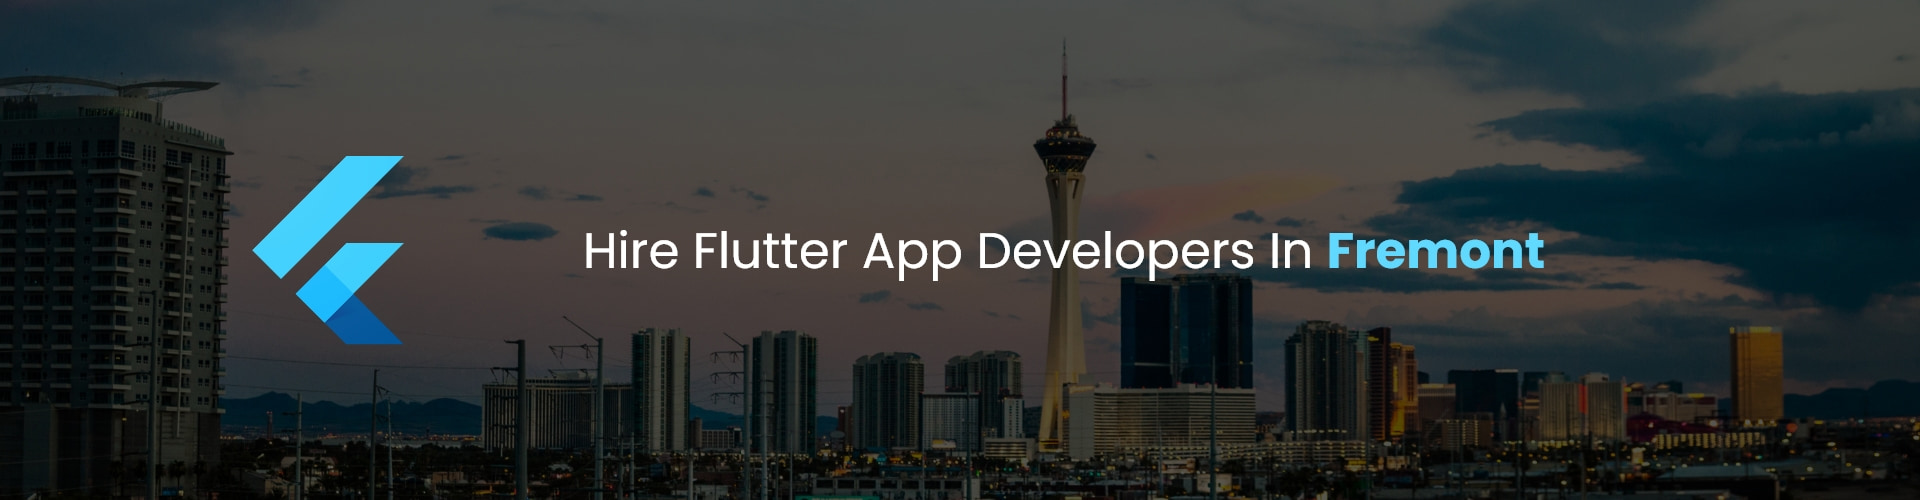 flutter app developers in fremont